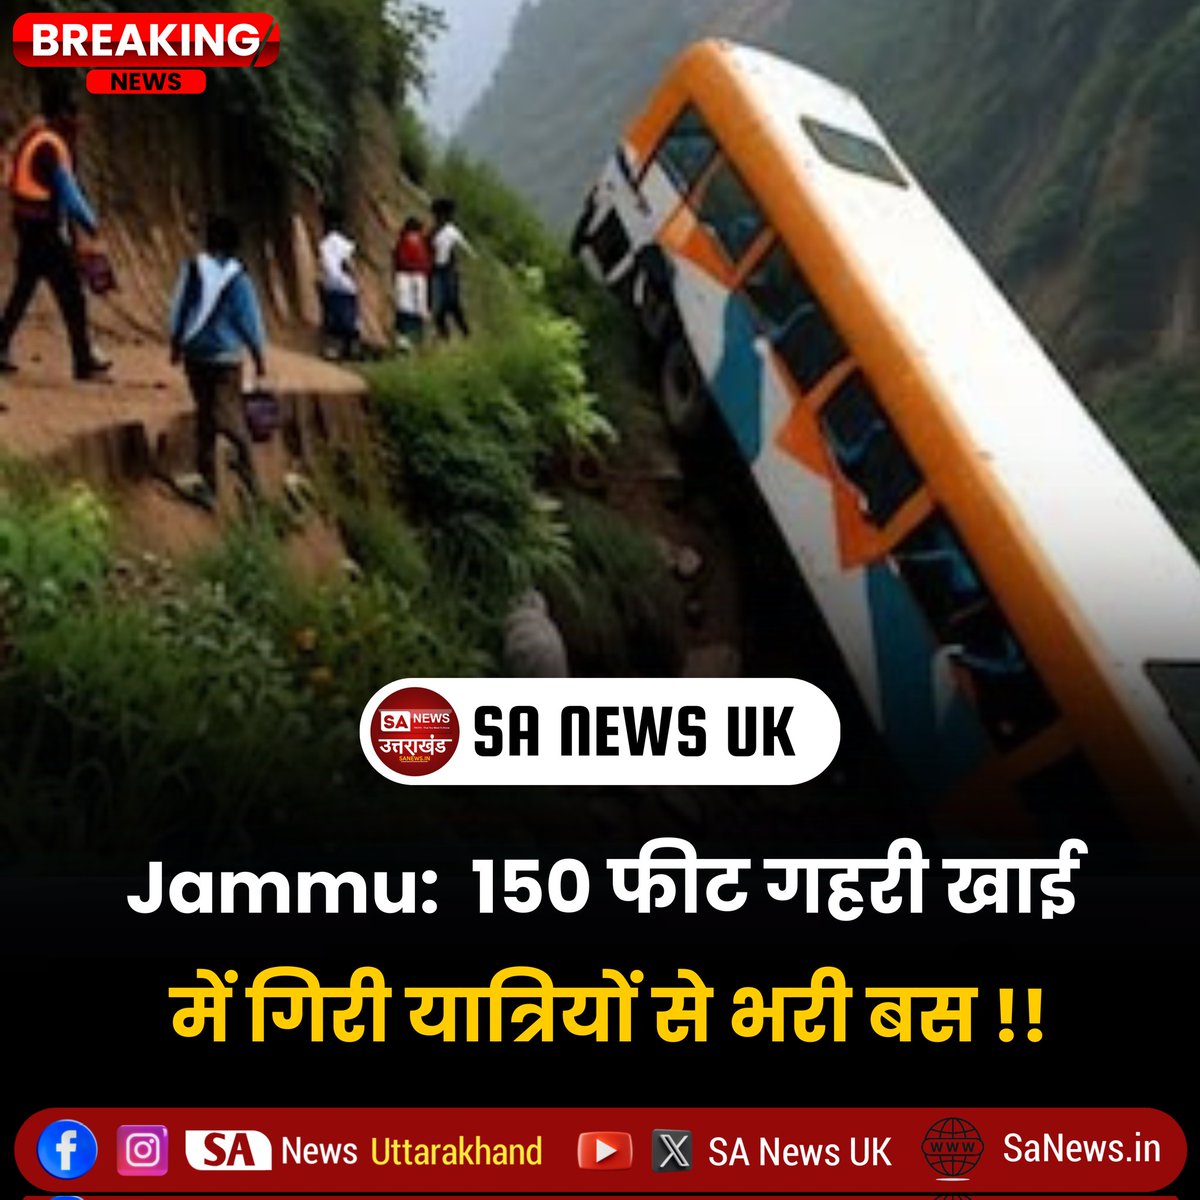 जम्मू जिले में तीर्थयात्रियों से भरी एक बस सड़क से फिसलकर खाई में गिर गई, जिससे 15 लोगों की मौत हो गई। जम्मू-कश्मीर के ट्रांसपोर्ट कमिश्नर राजिंदर सिंह तारा ने बताया कि 15 लोगों की मौत हो गई है और 15 लोग घायल हैं। #BreakingNews‌ #sanewsuk